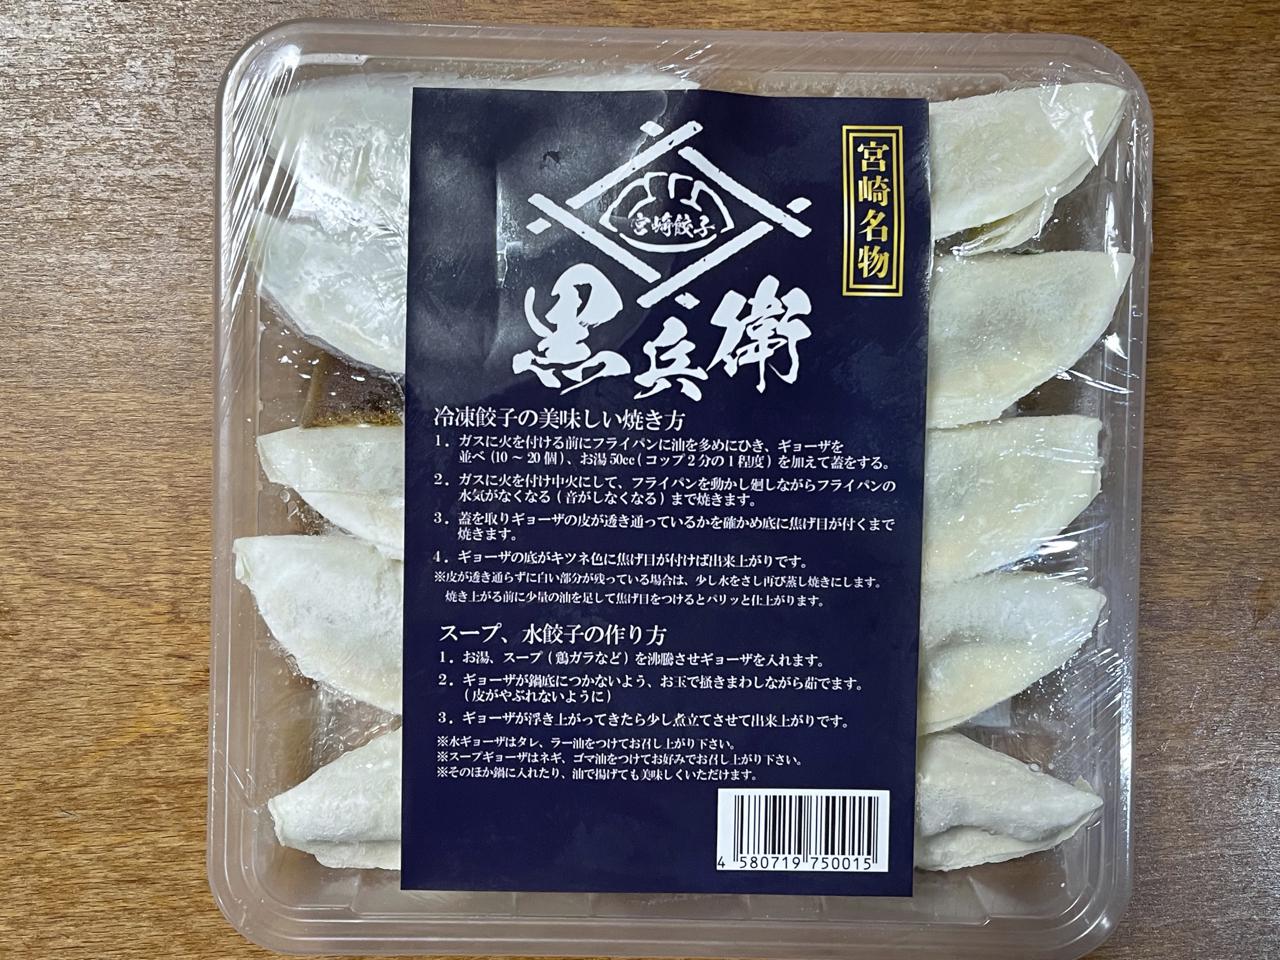 宮崎ぎょうざ購入額日本一【黒兵衛】の餃子を食べてみました